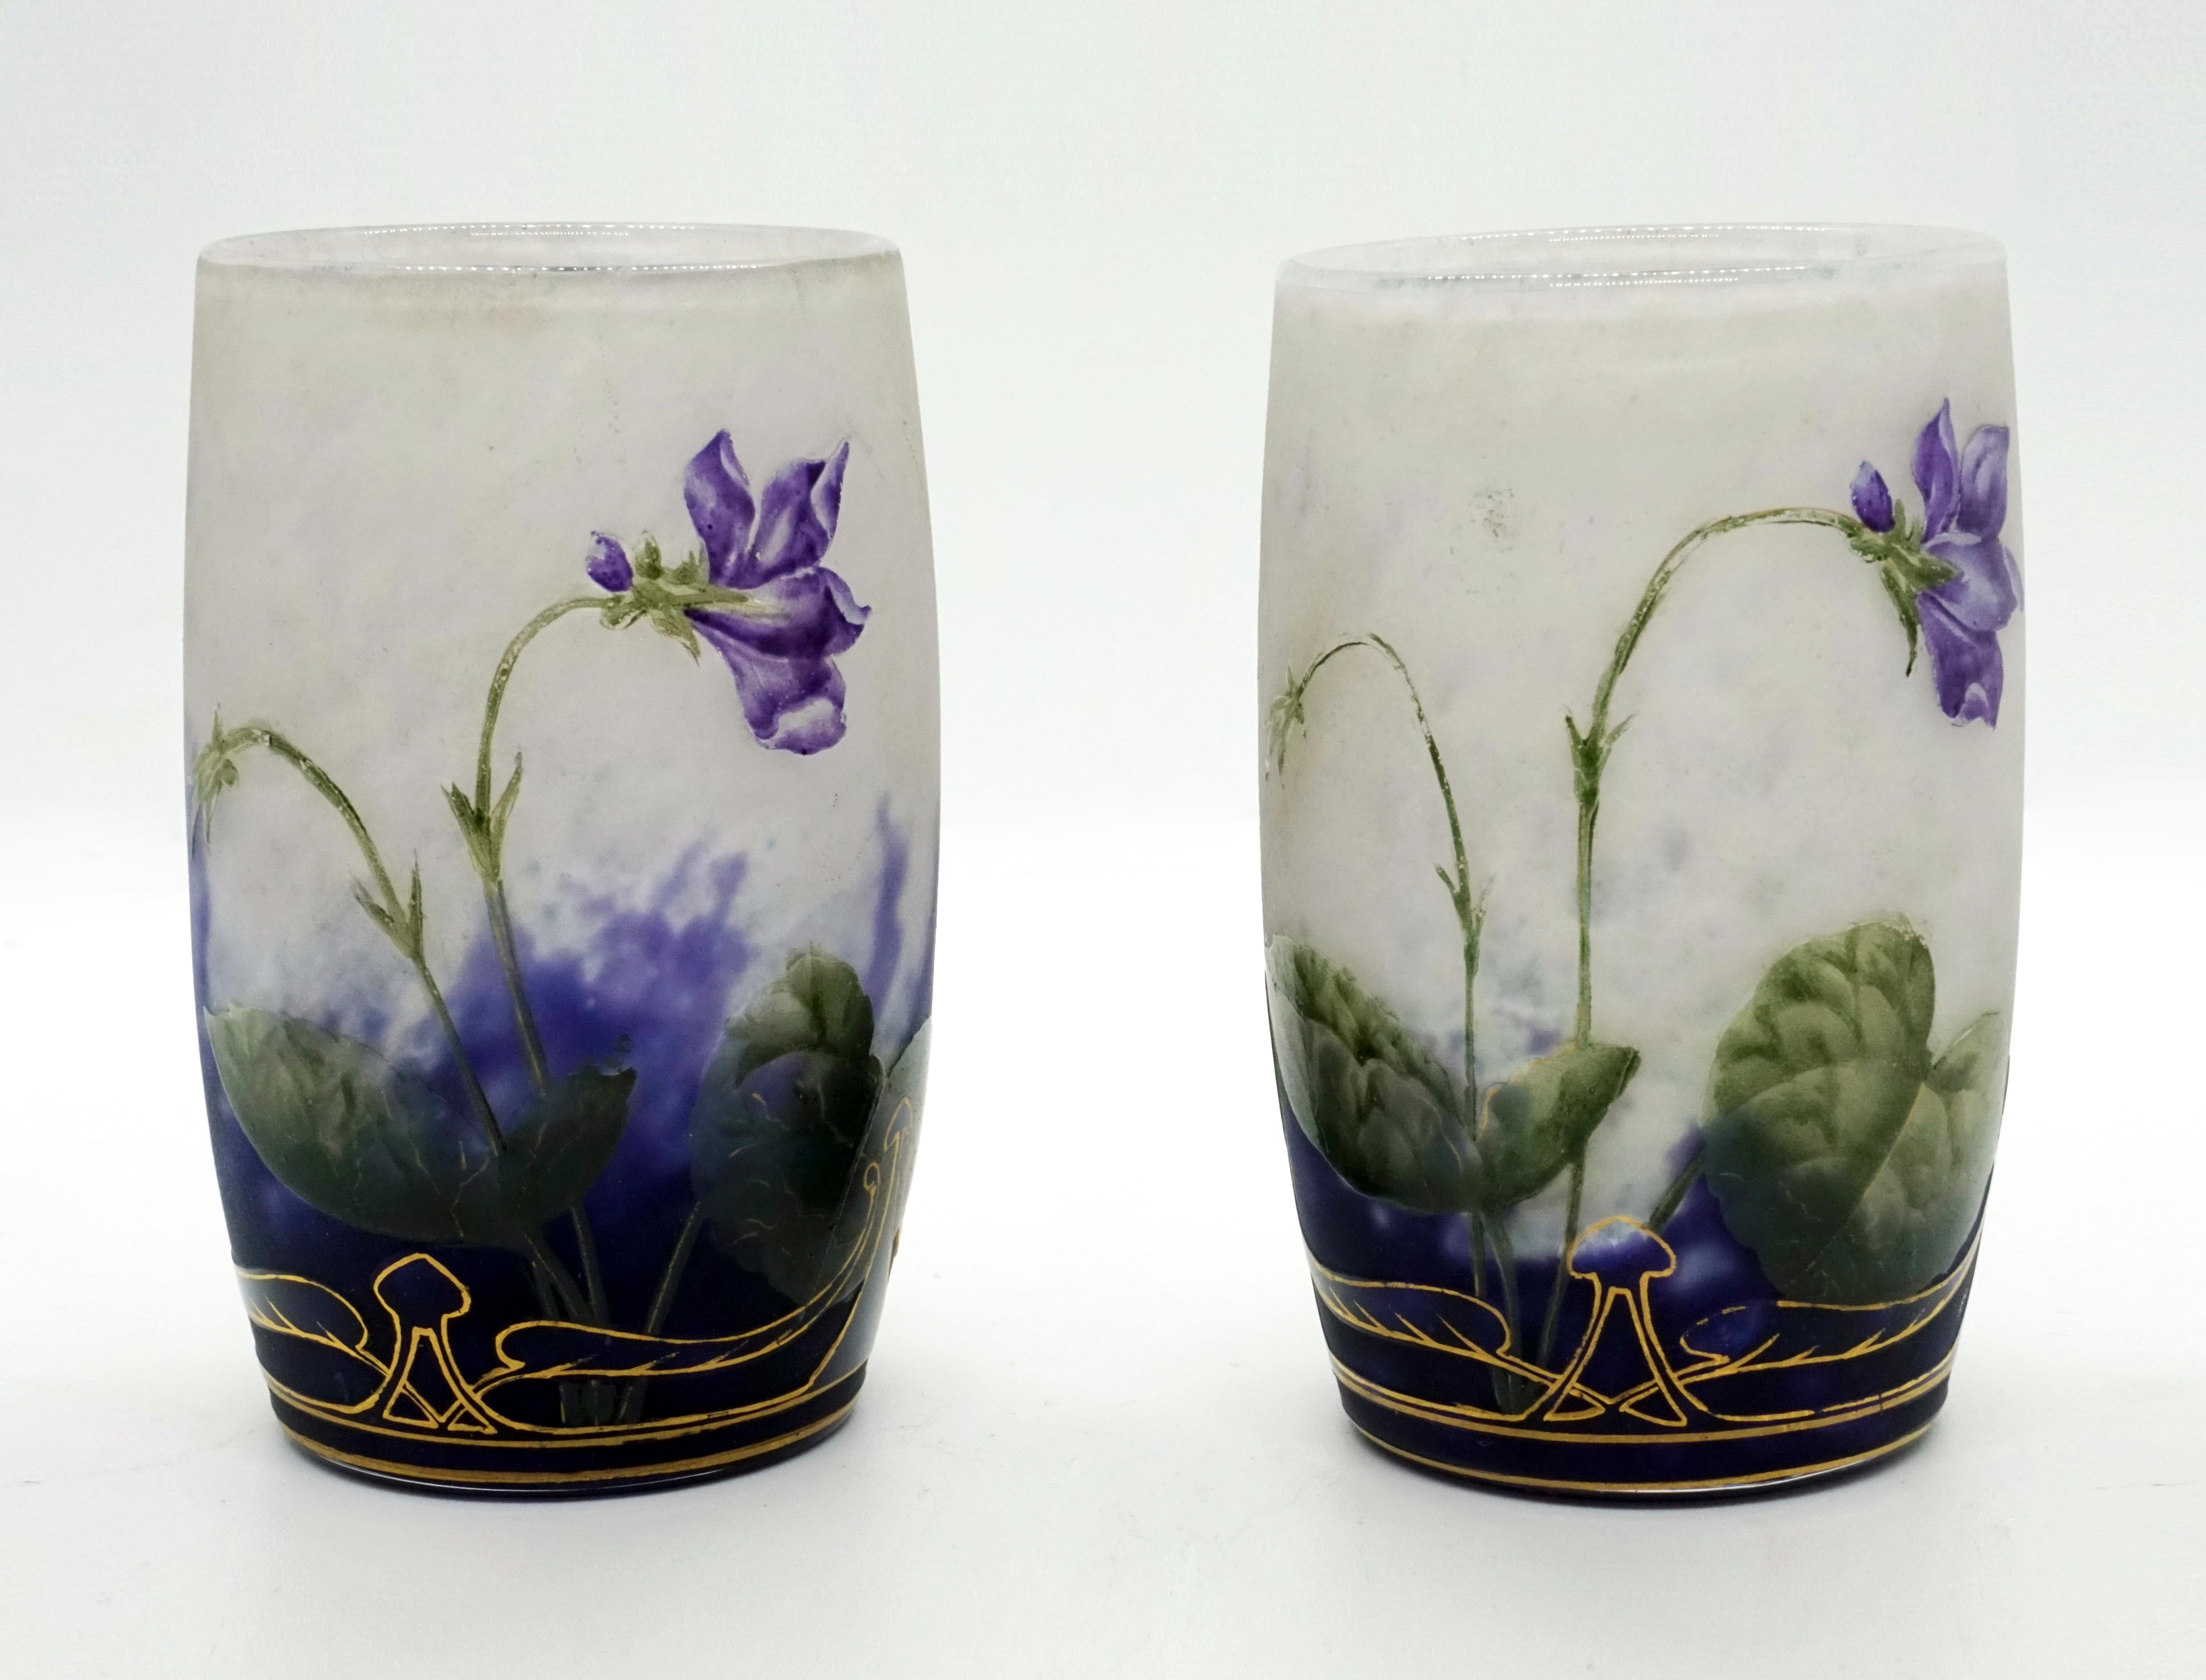 French Pair of Daum Nancy Art Nouveau Vases with Violet Decor, France, 1890-1895